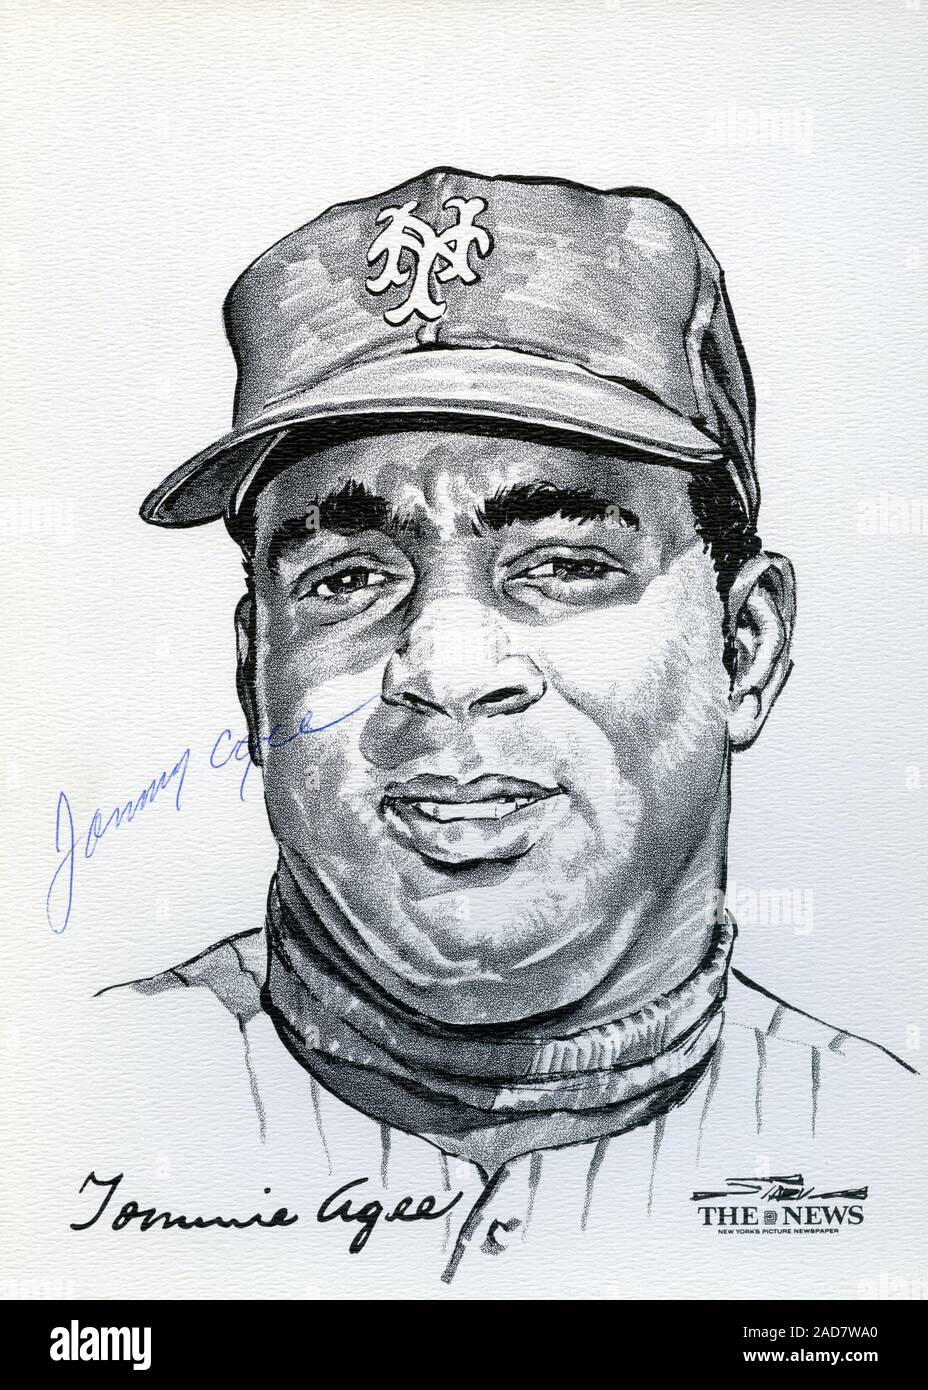 Portrait von New York Mets Spieler Tommie Agee vom Wunder Team 1969 Mets, der World Series von Künstler Stark gewonnen und veröffentlicht als Souvenir Portfolio durch die Nachrichten von New York. Stockfoto